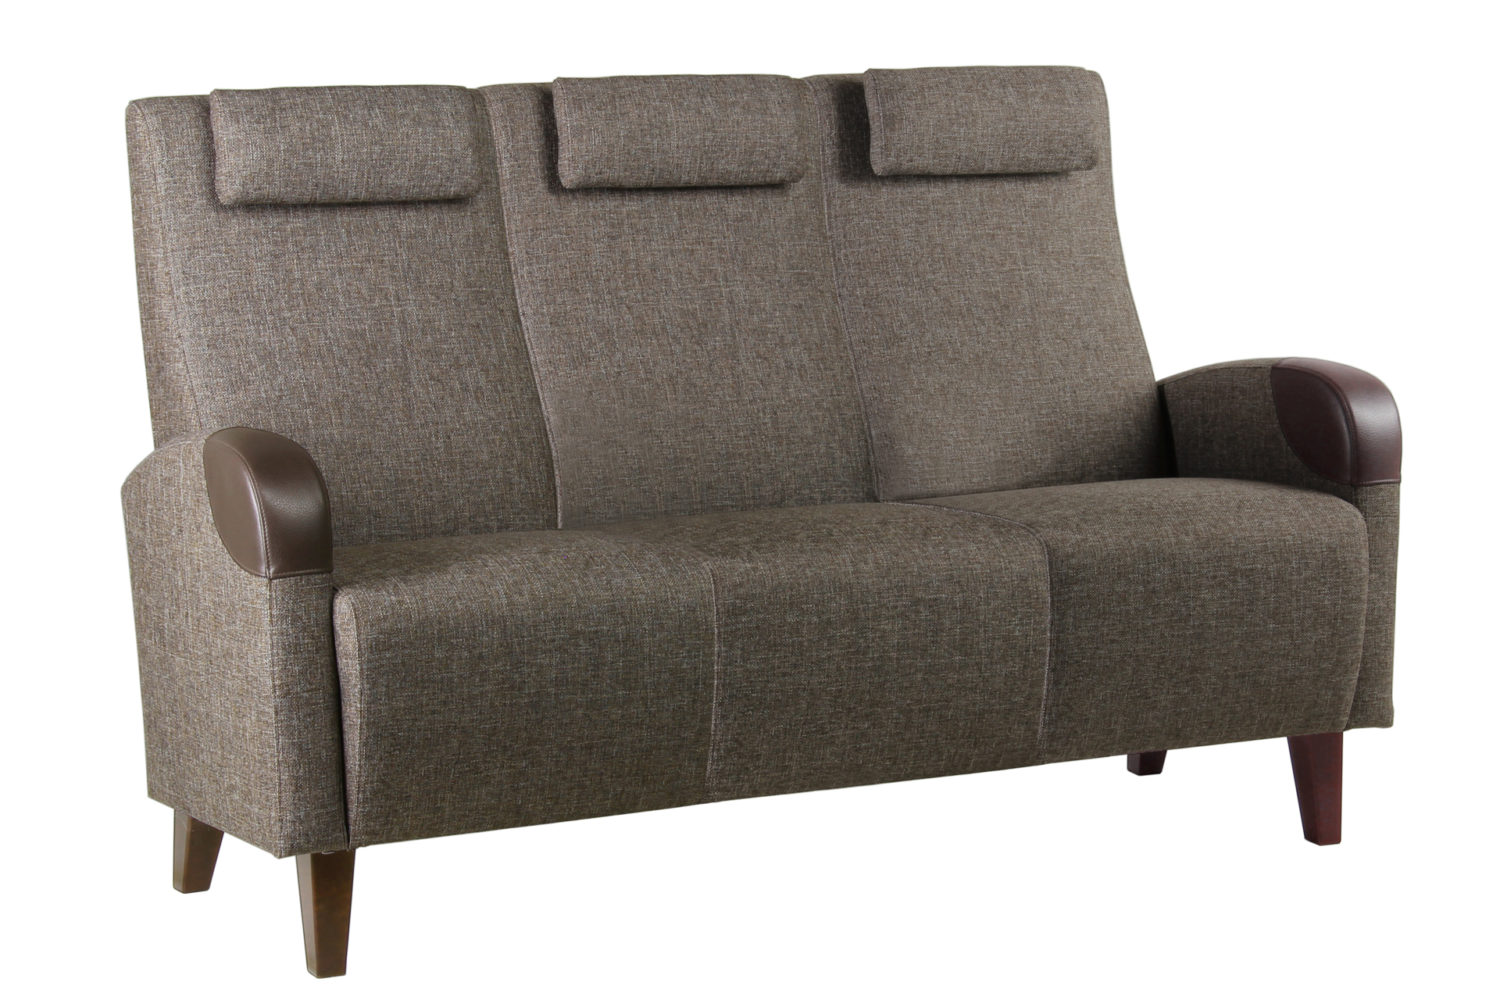 Aino-sohvan runko on koivuvaneria, jalusta koivua ja pehmuste paloturvallista vaahtomuovia